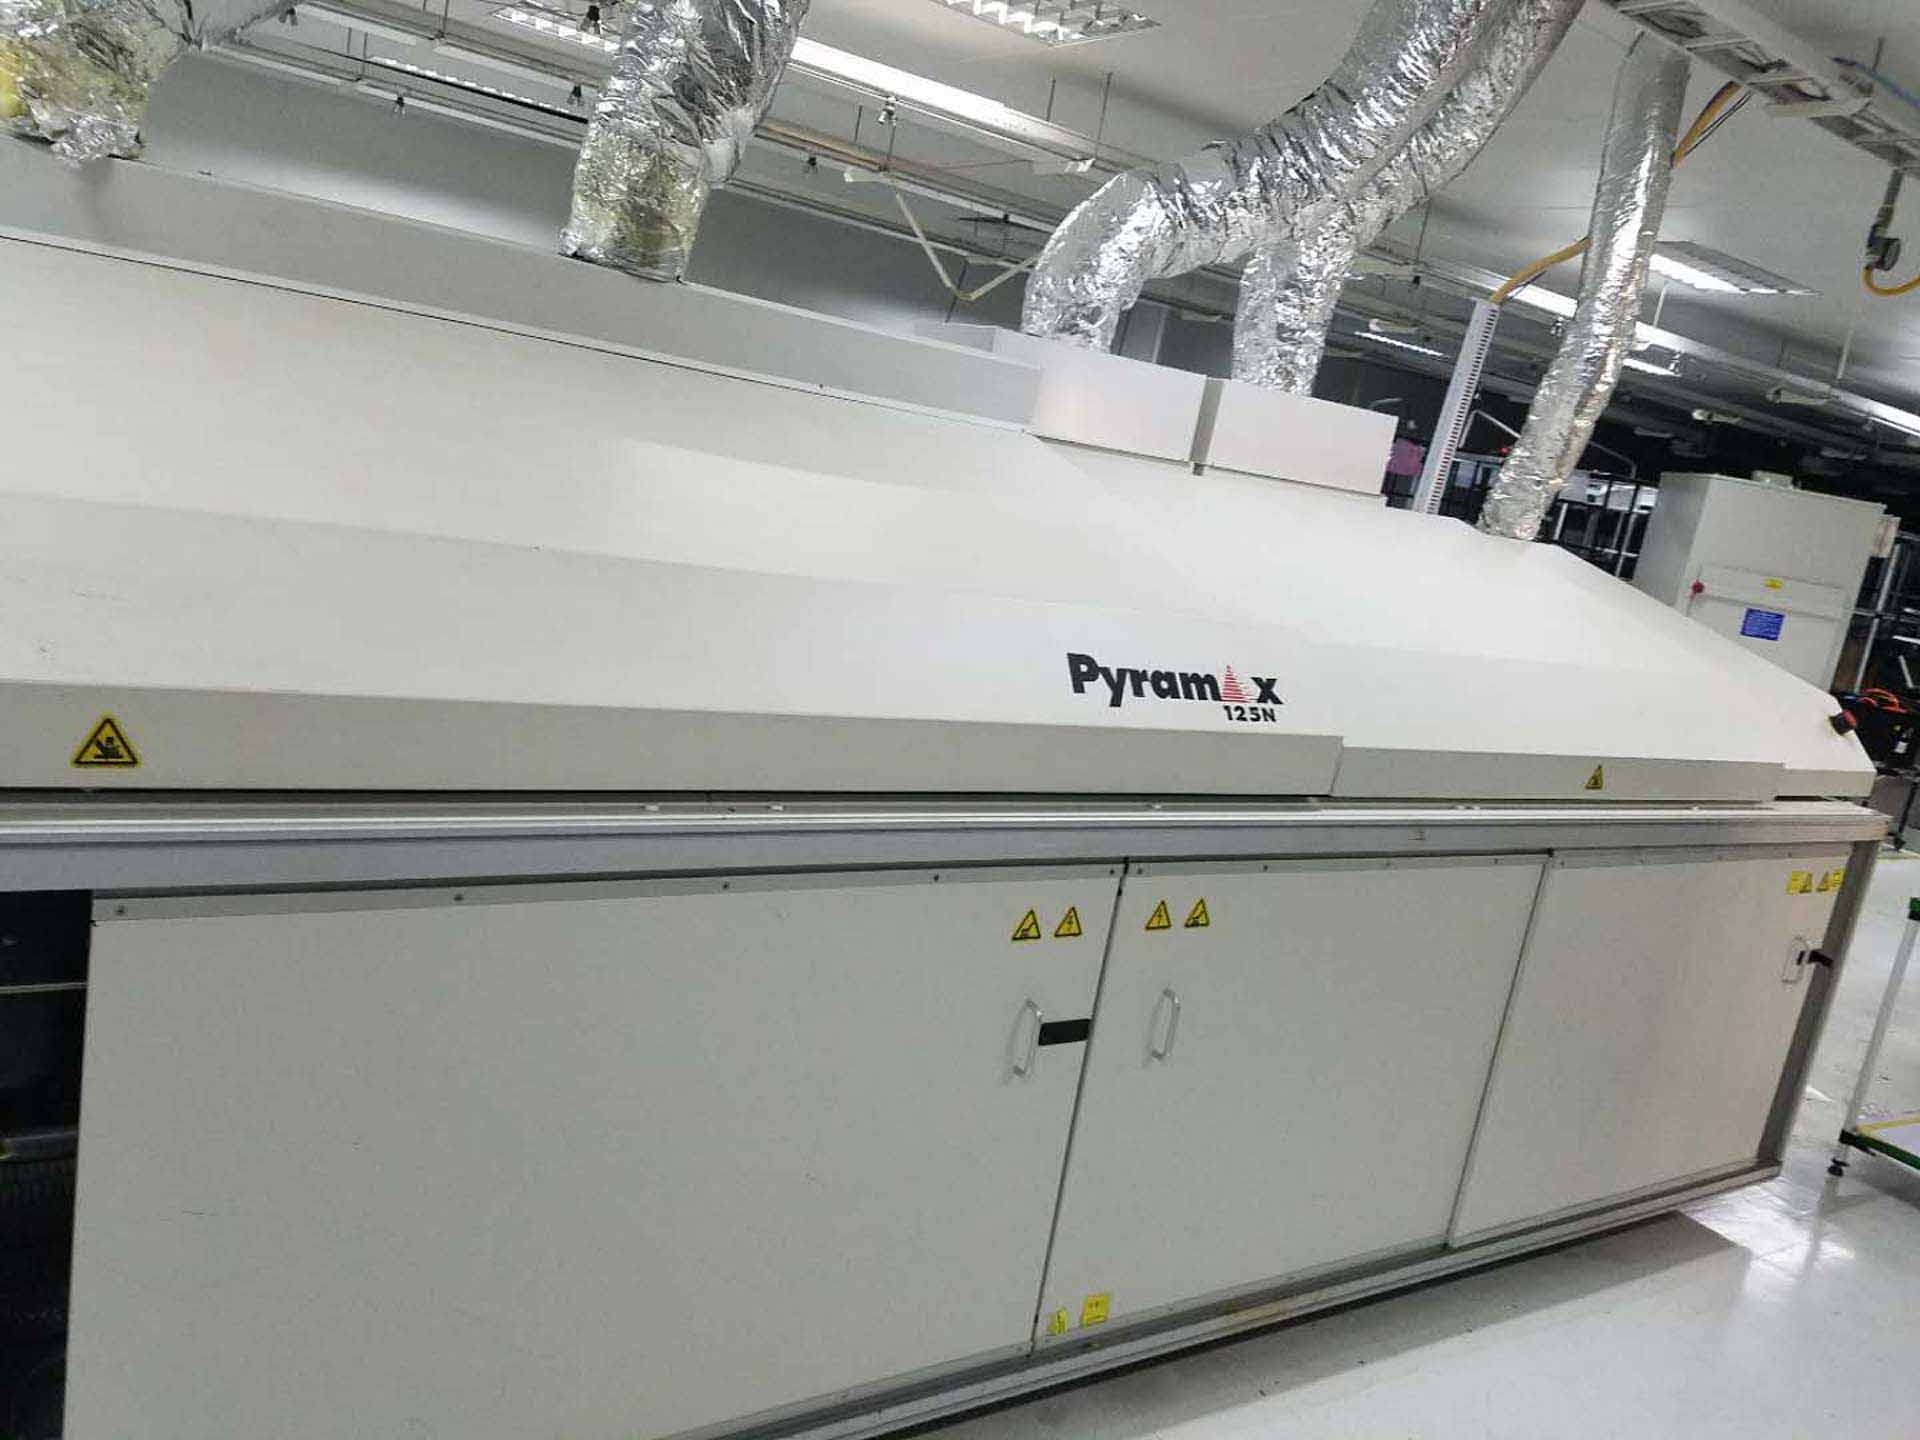 图为 已使用的 BTU Pyramax 125N 待售